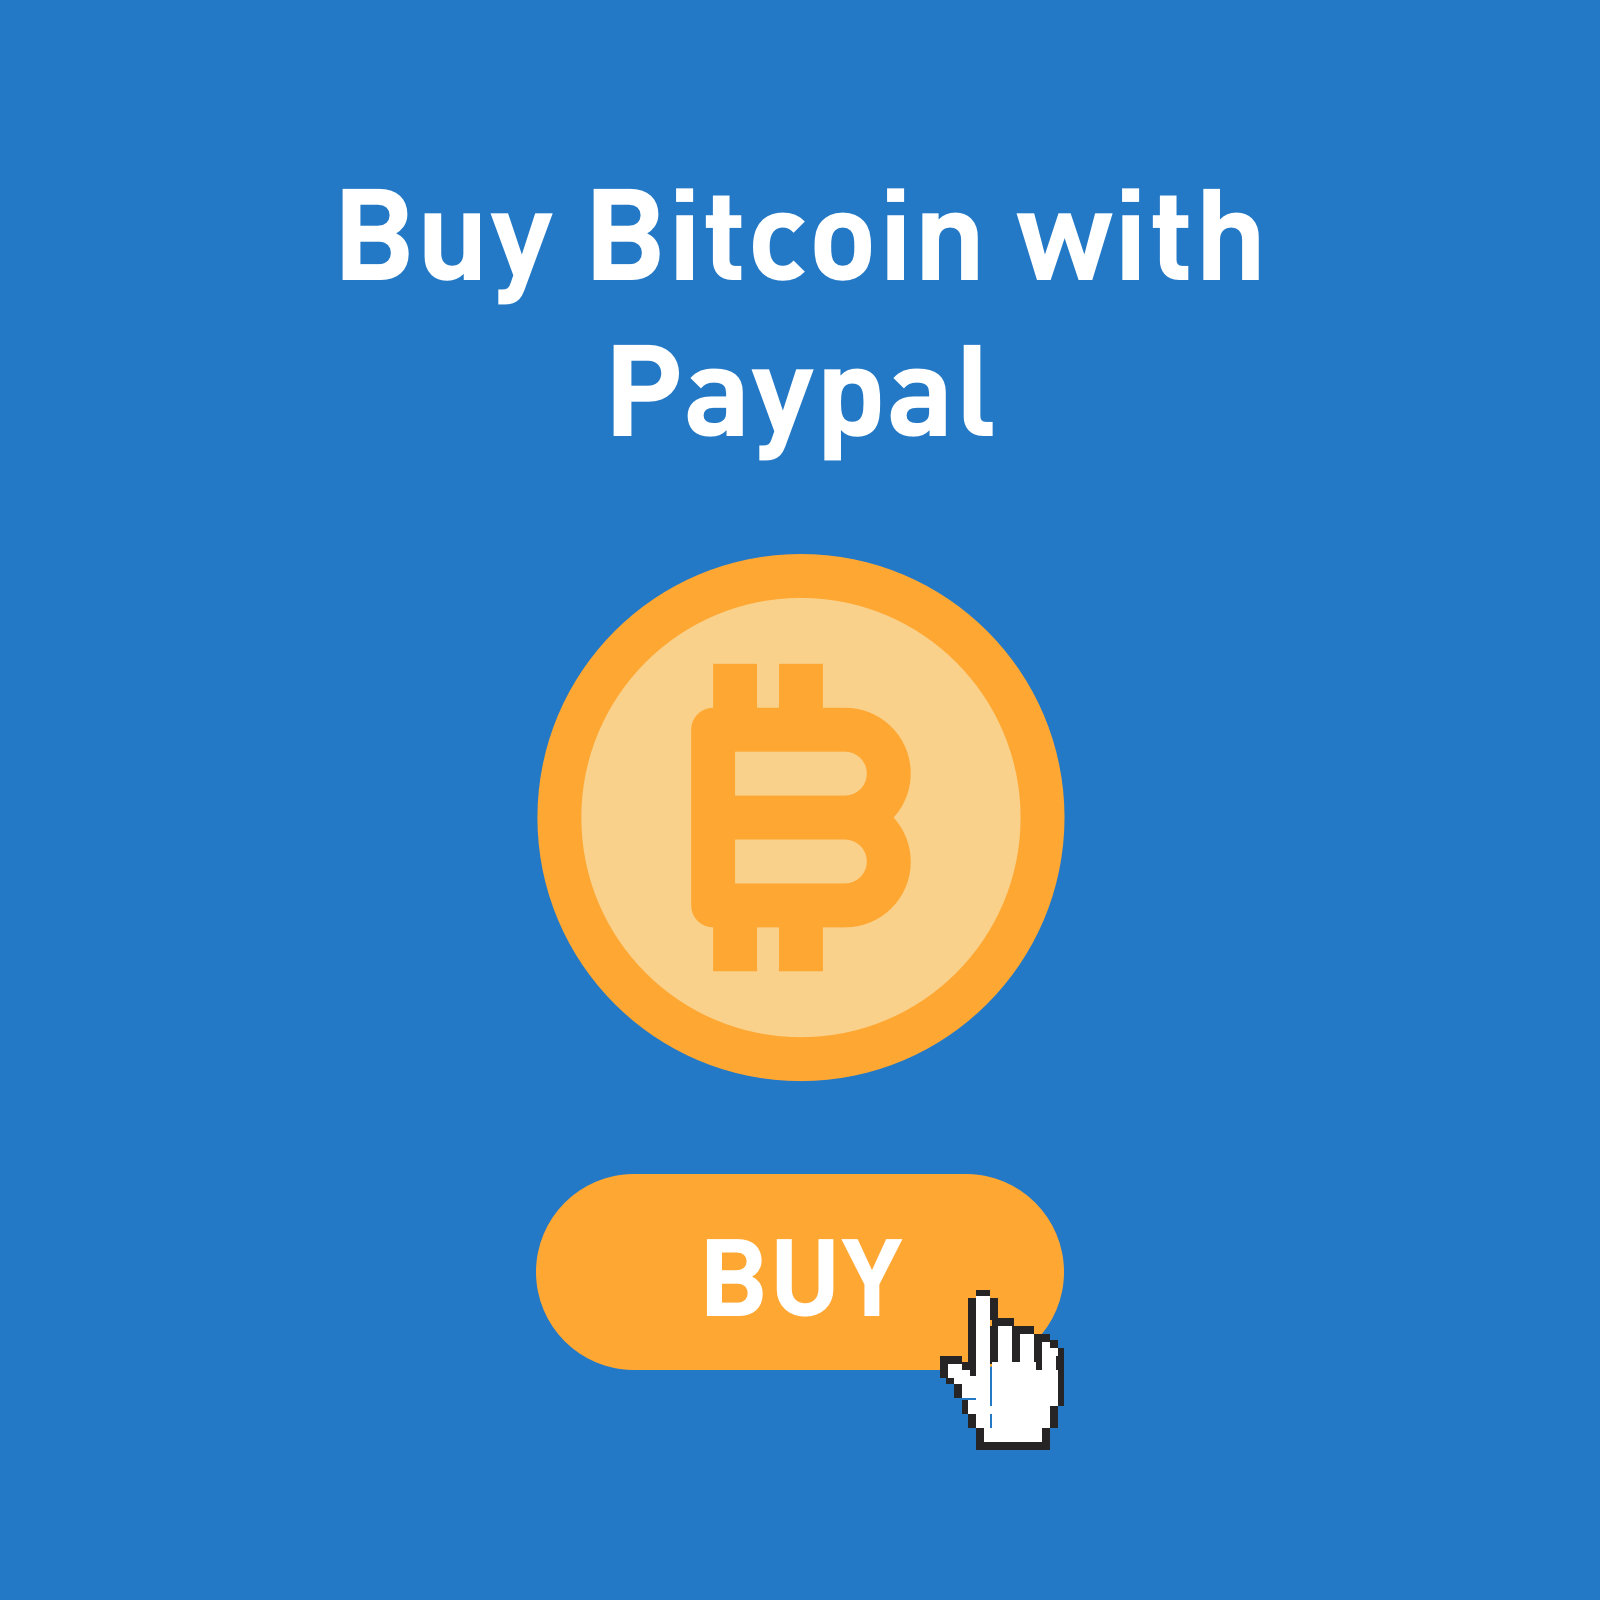 Paypal consente di trasferire bitcoin a wallet terzi | Tom's Hardware